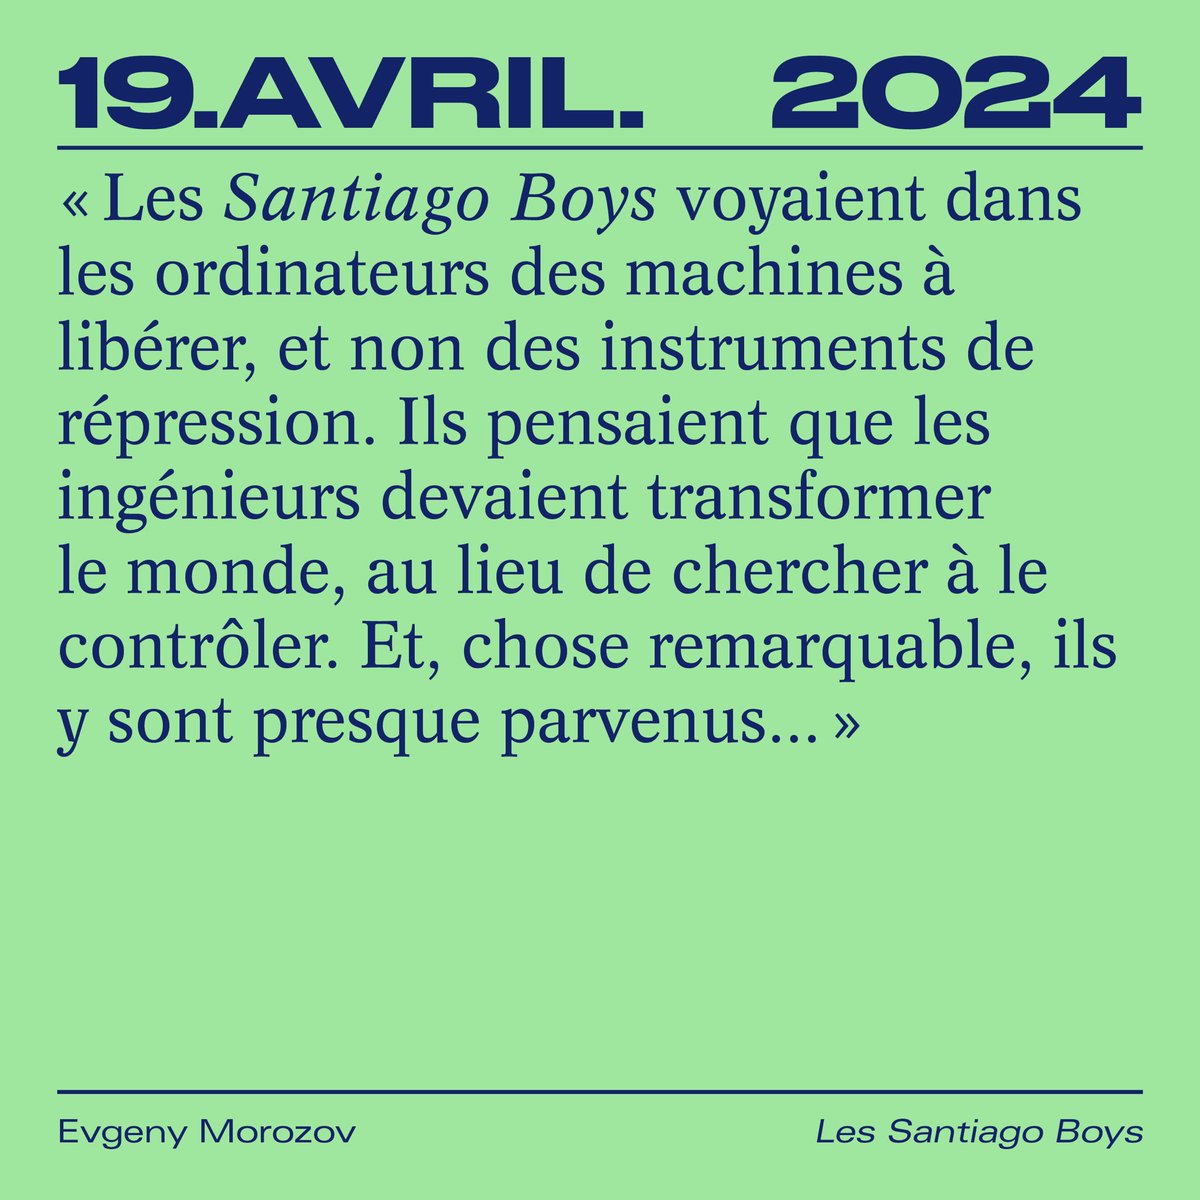 🔜💻 À paraître le 19 avril 2024 : l’histoire des Santiago Boys, de jeunes ingénieurs qui ont tenté de construire leur propre Internet socialiste à la demande de Salvador Allende au Chili 🇨🇱